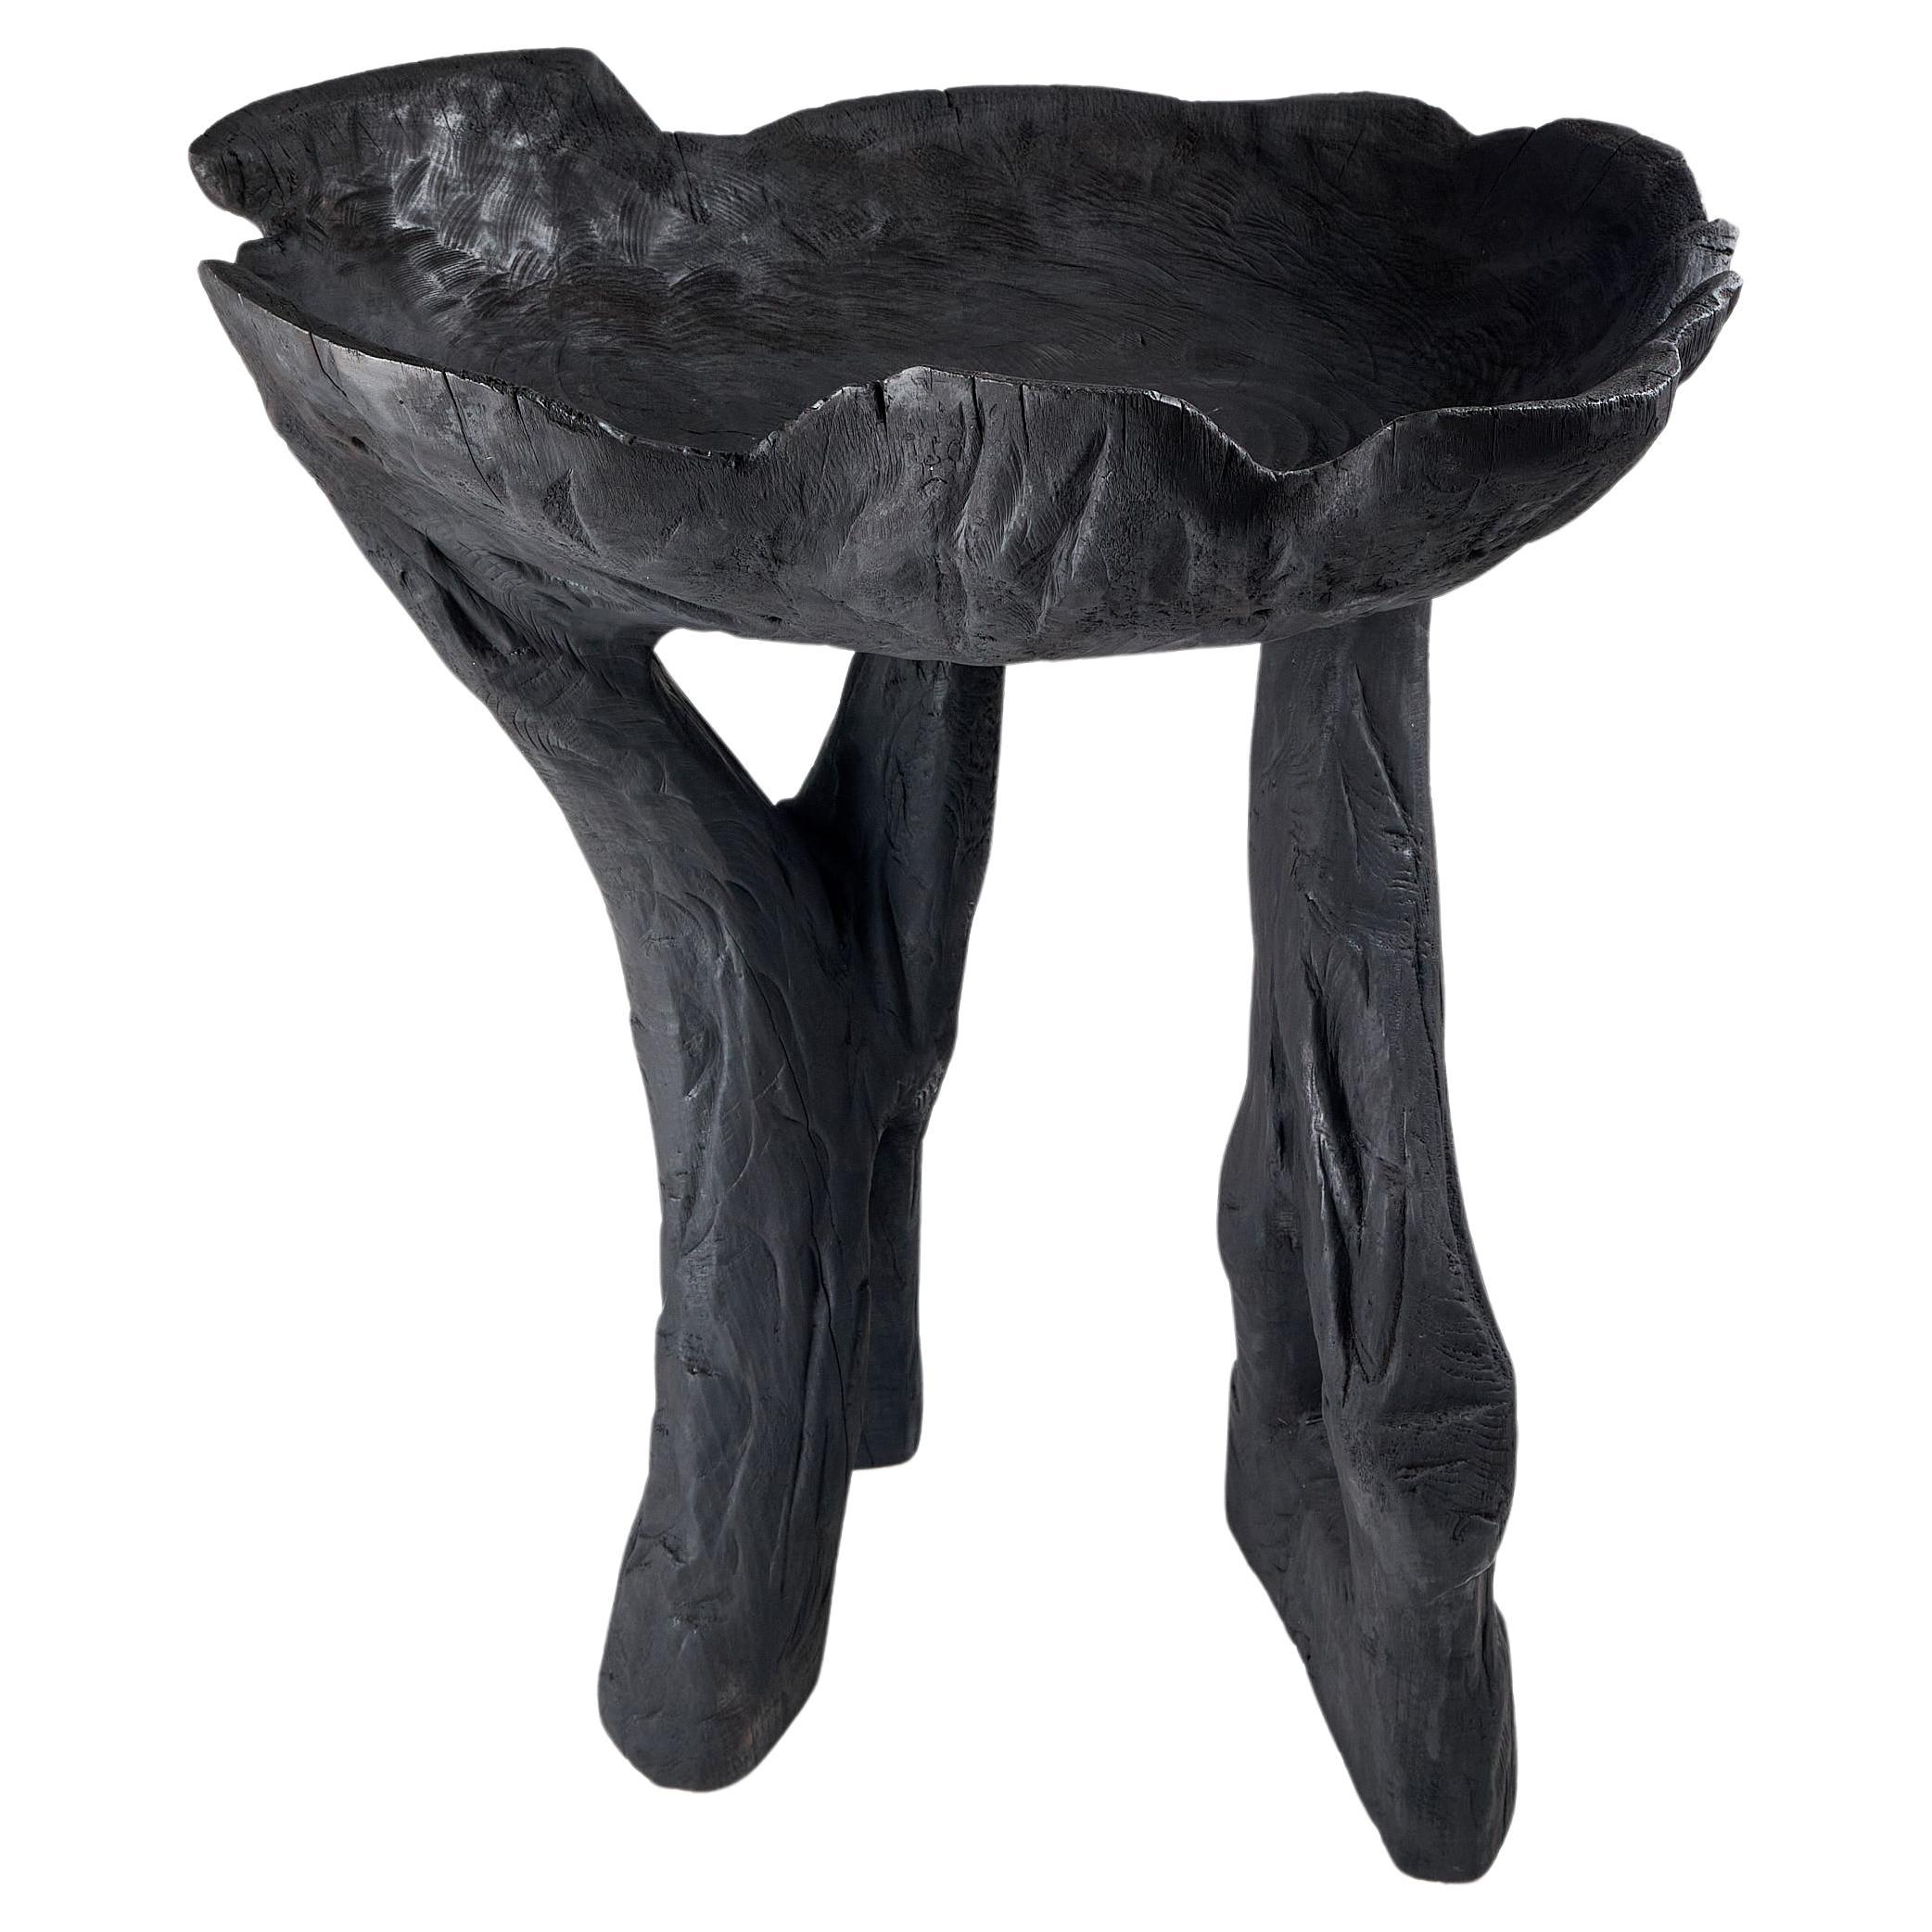 Still Stand Abstract Biomorphic Wood Bowl, Chainsaw Carved, Functional Sculpture (Sculpture fonctionnelle sculptée à la tronçonneuse)